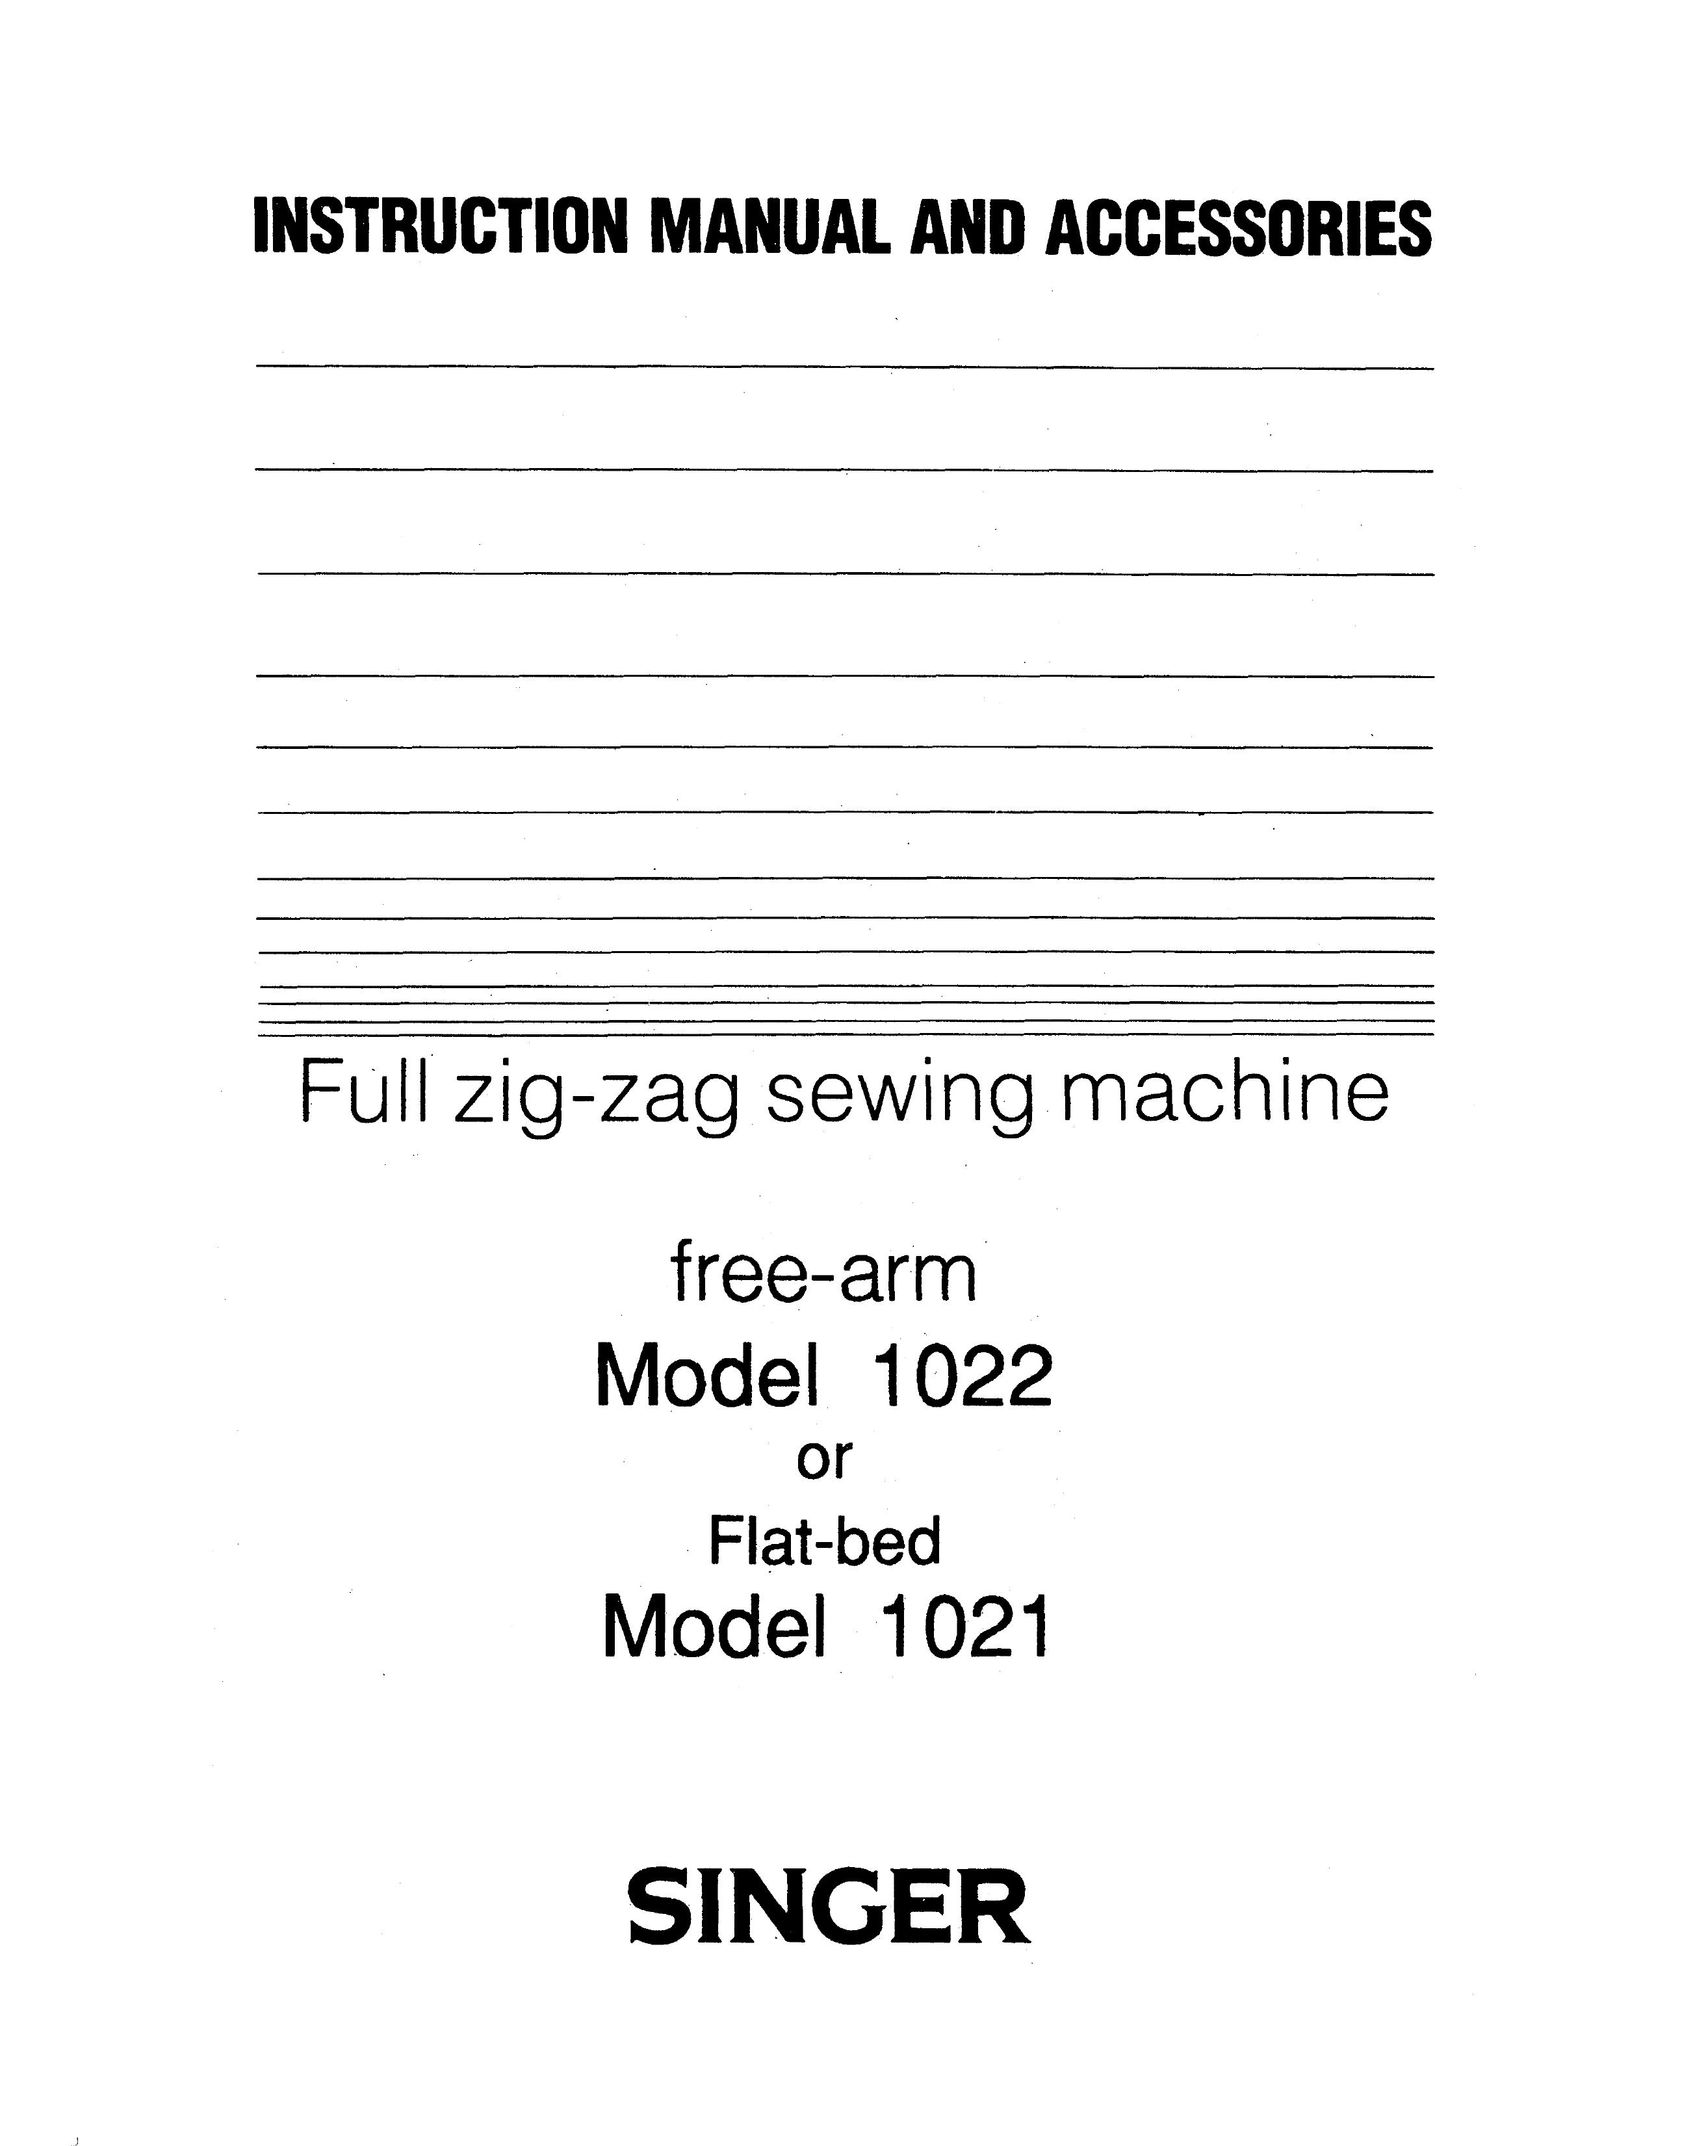 Singer 1021 Sewing Machine User Manual (Page 1)